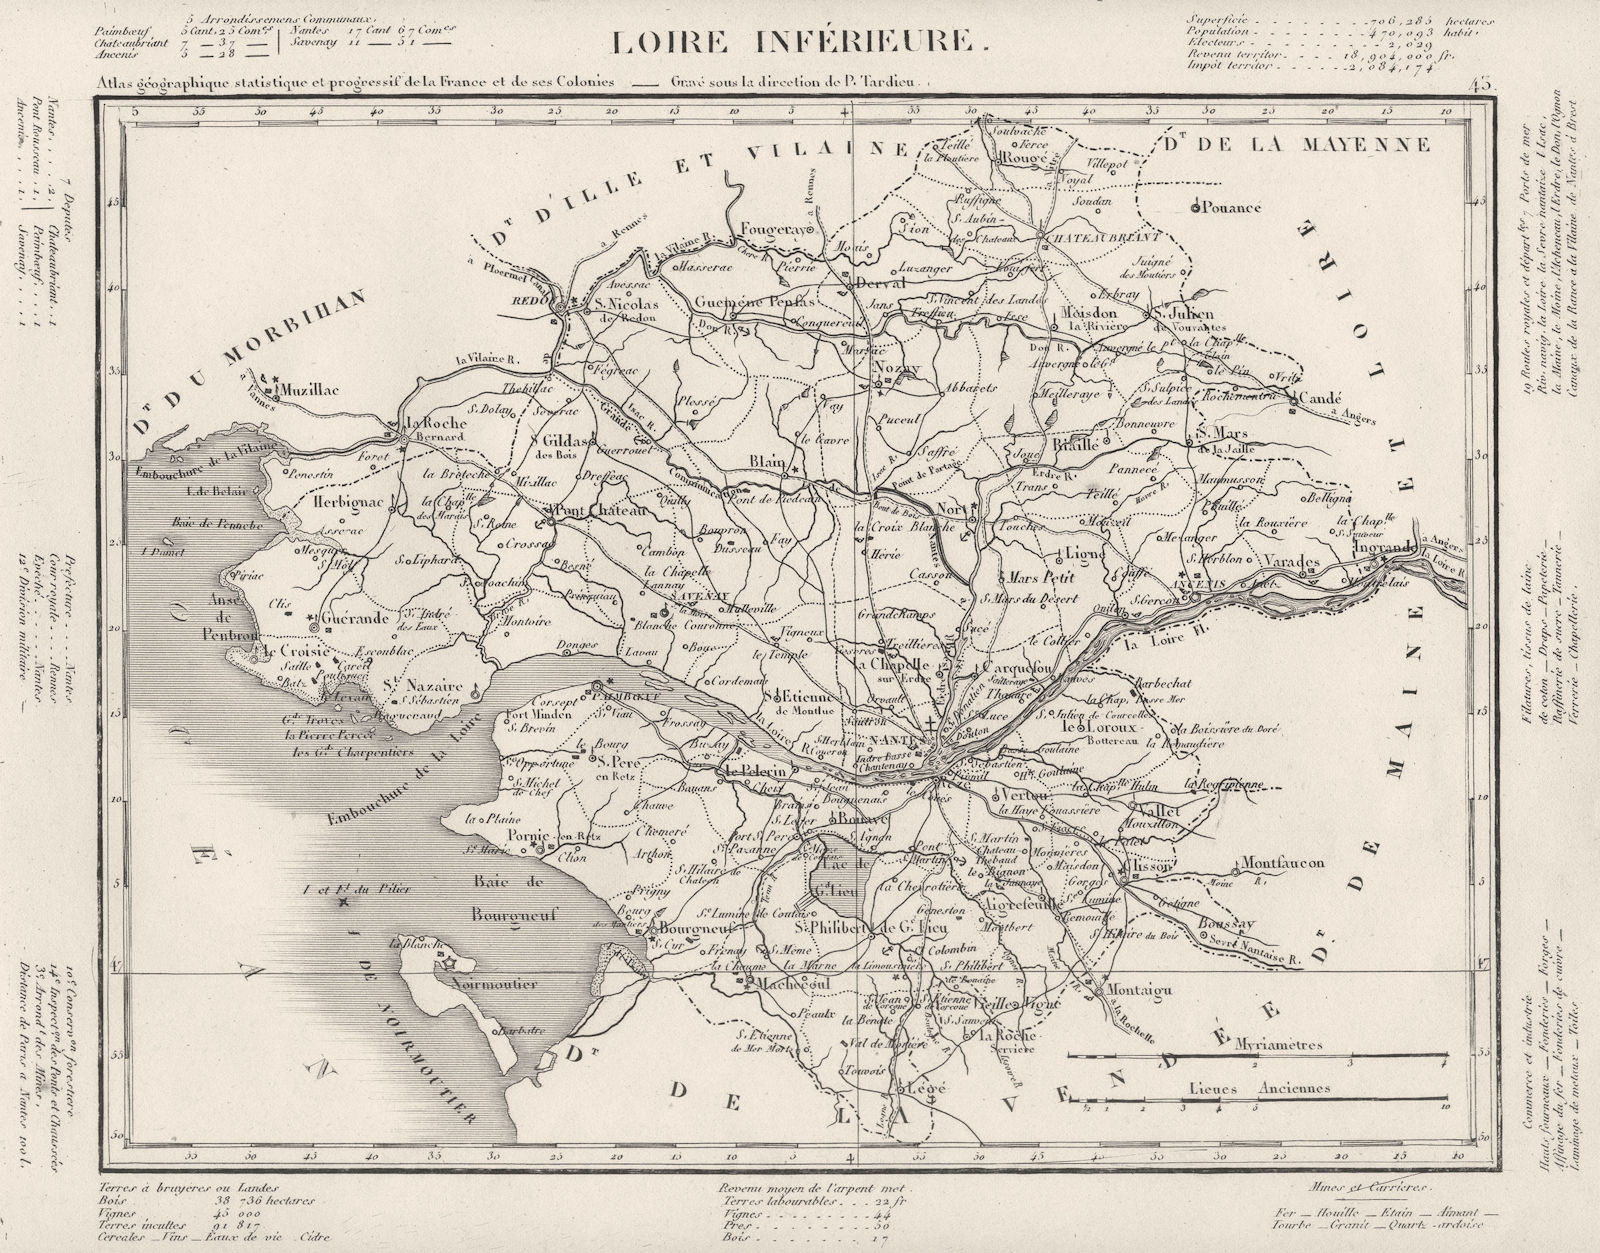 LOIRE. Loire- Atlantique département. Tardieu 1830 old map plan chart